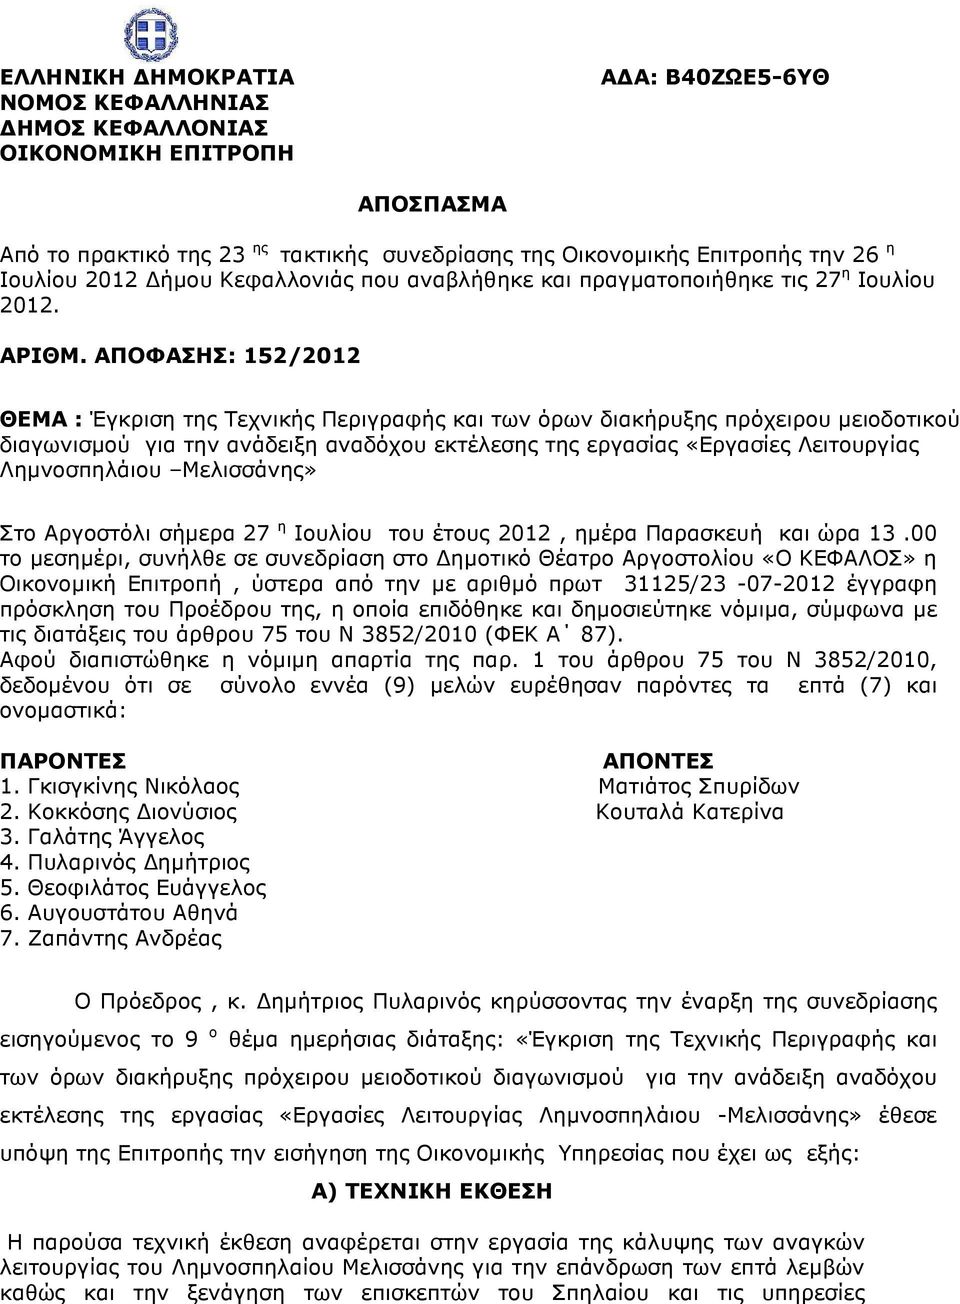 ΑΠΟΦΑΣΗΣ: 152/2012 ΘΕΜΑ : Έγκριση της Τεχνικής Περιγραφής και των όρων διακήρυξης πρόχειρου µειοδοτικού διαγωνισµού για την ανάδειξη αναδόχου εκτέλεσης της εργασίας «Εργασίες Λειτουργίας